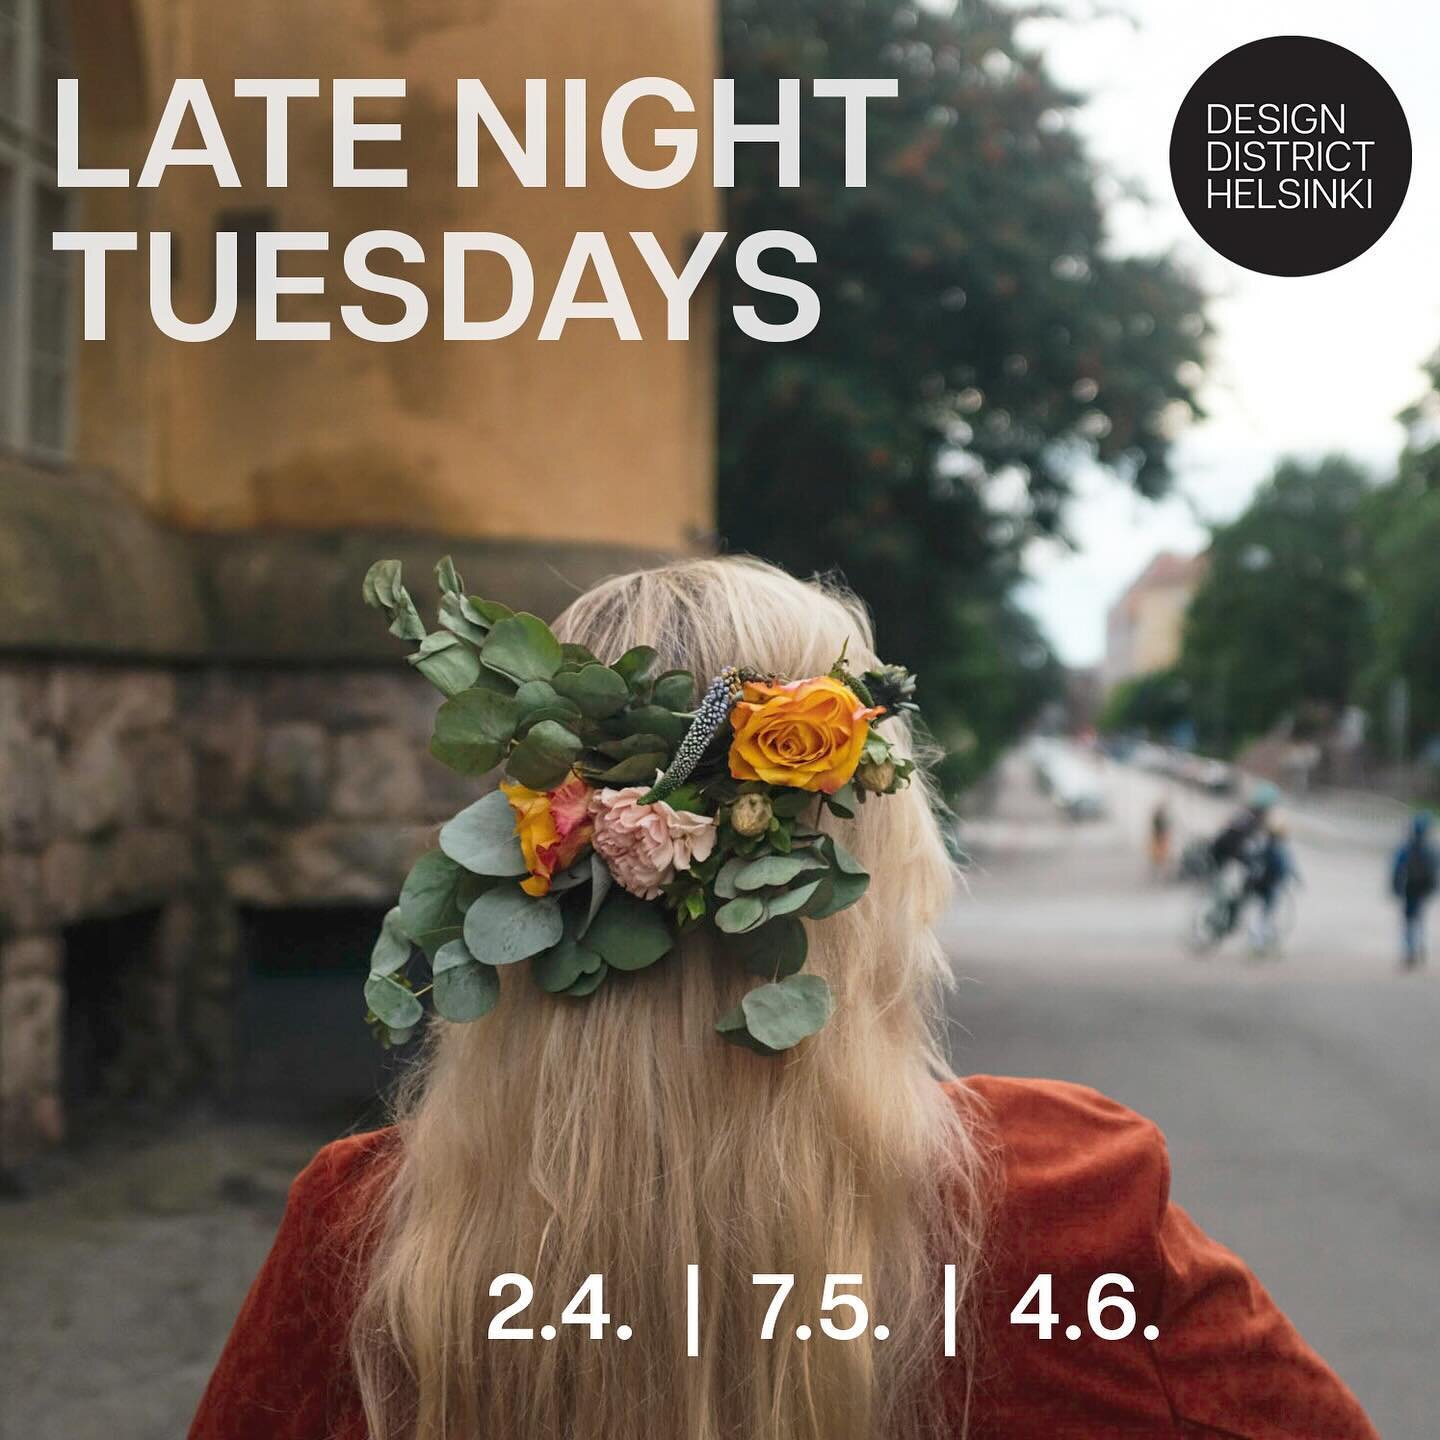 Tavataan huhtikuussa studiolla taiteen ja taidemuotoilun ilosta 🌱☀️
Huomenna tiistaina 2.4 on Design District Helsingin Late Night Tuesday kivijaloissa ja studio auki klo 12-20
Muina p&auml;ivin&auml; viikolla 14
ke-su 12-16

📍Kauppiaankatu 13 0016